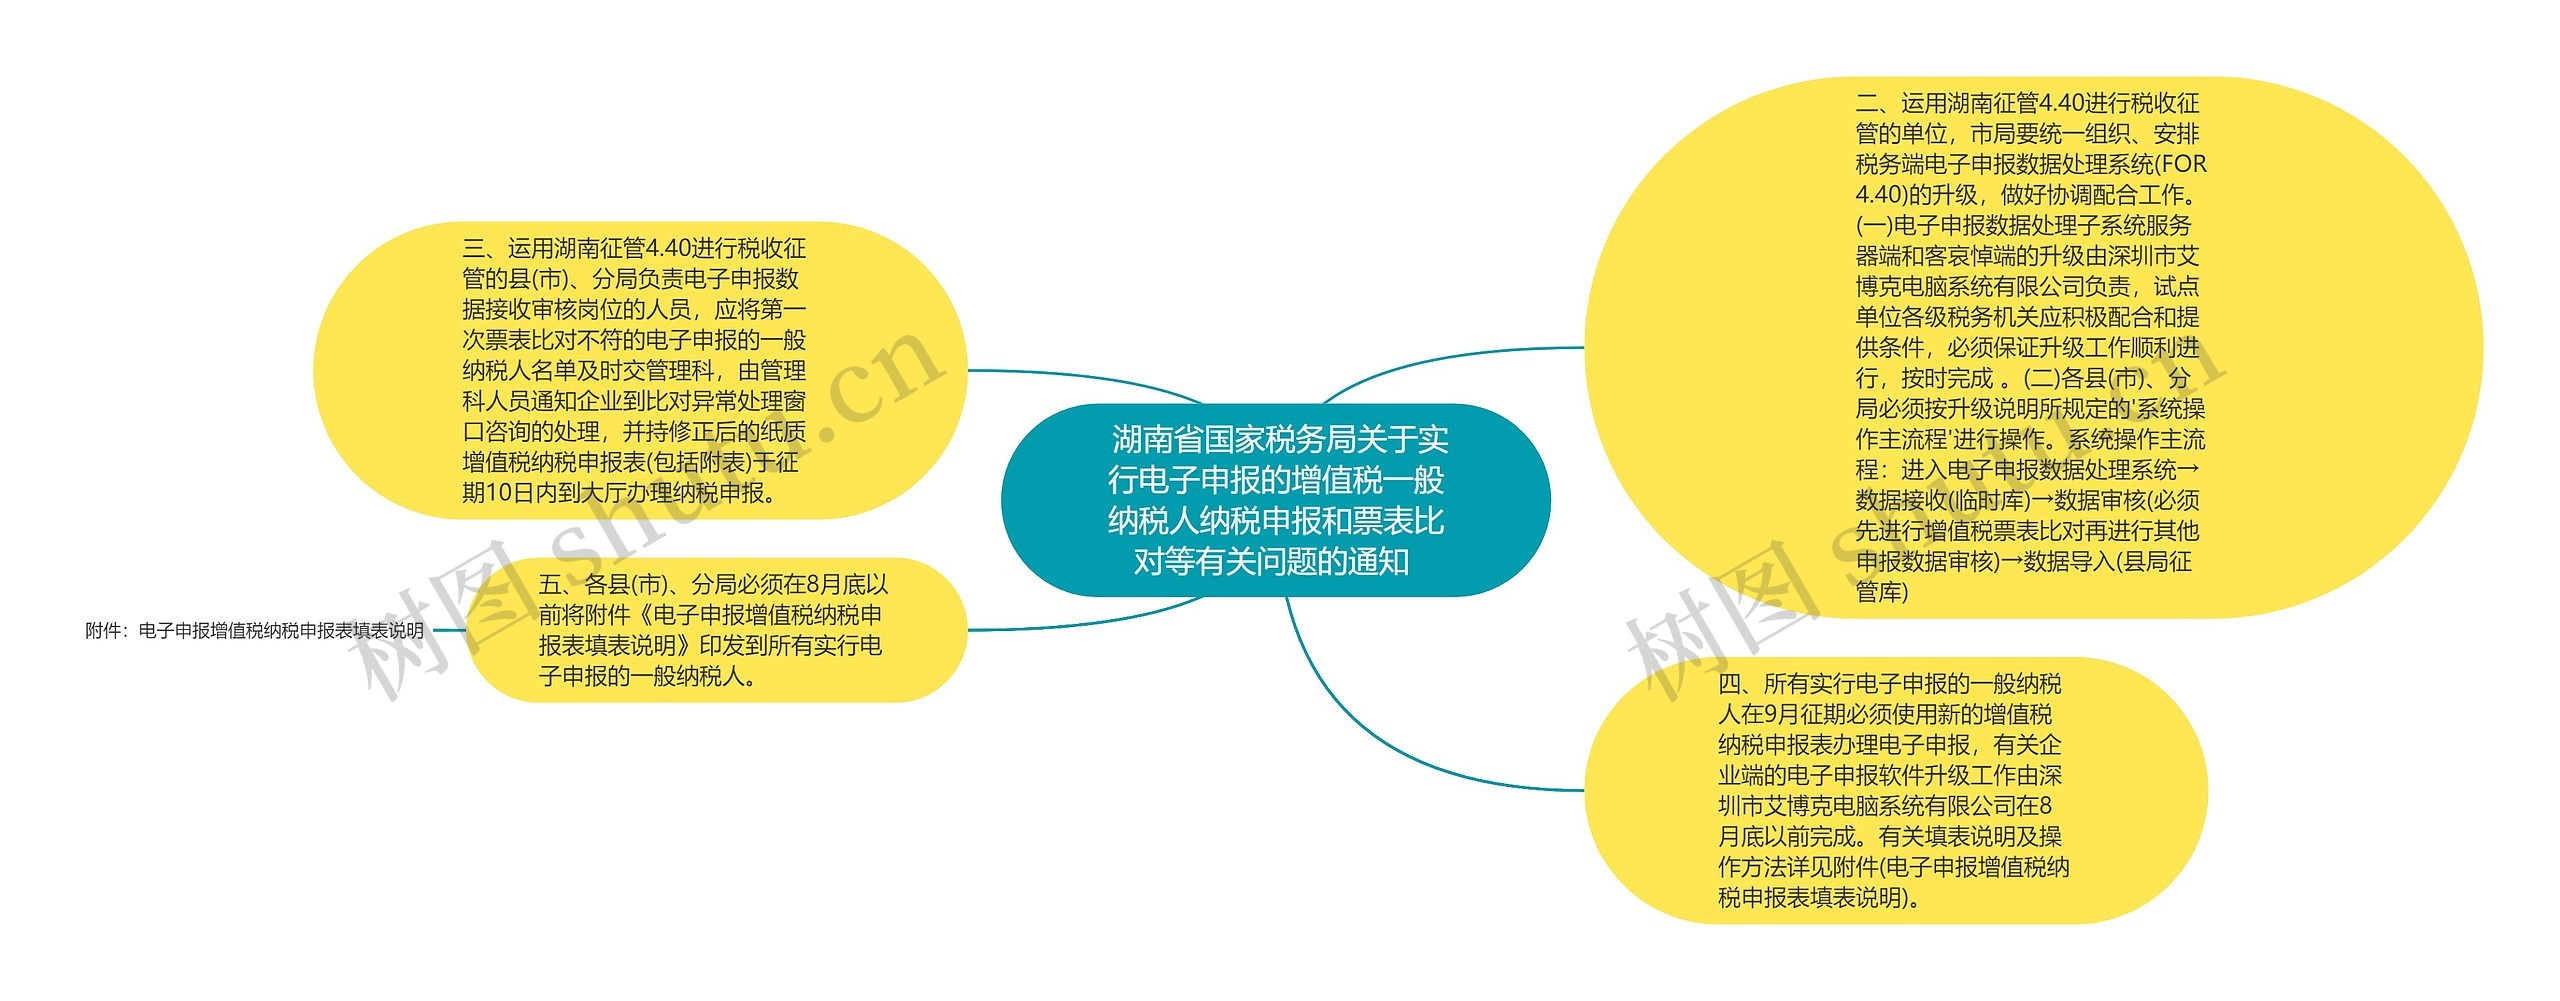  湖南省国家税务局关于实行电子申报的增值税一般纳税人纳税申报和票表比对等有关问题的通知 